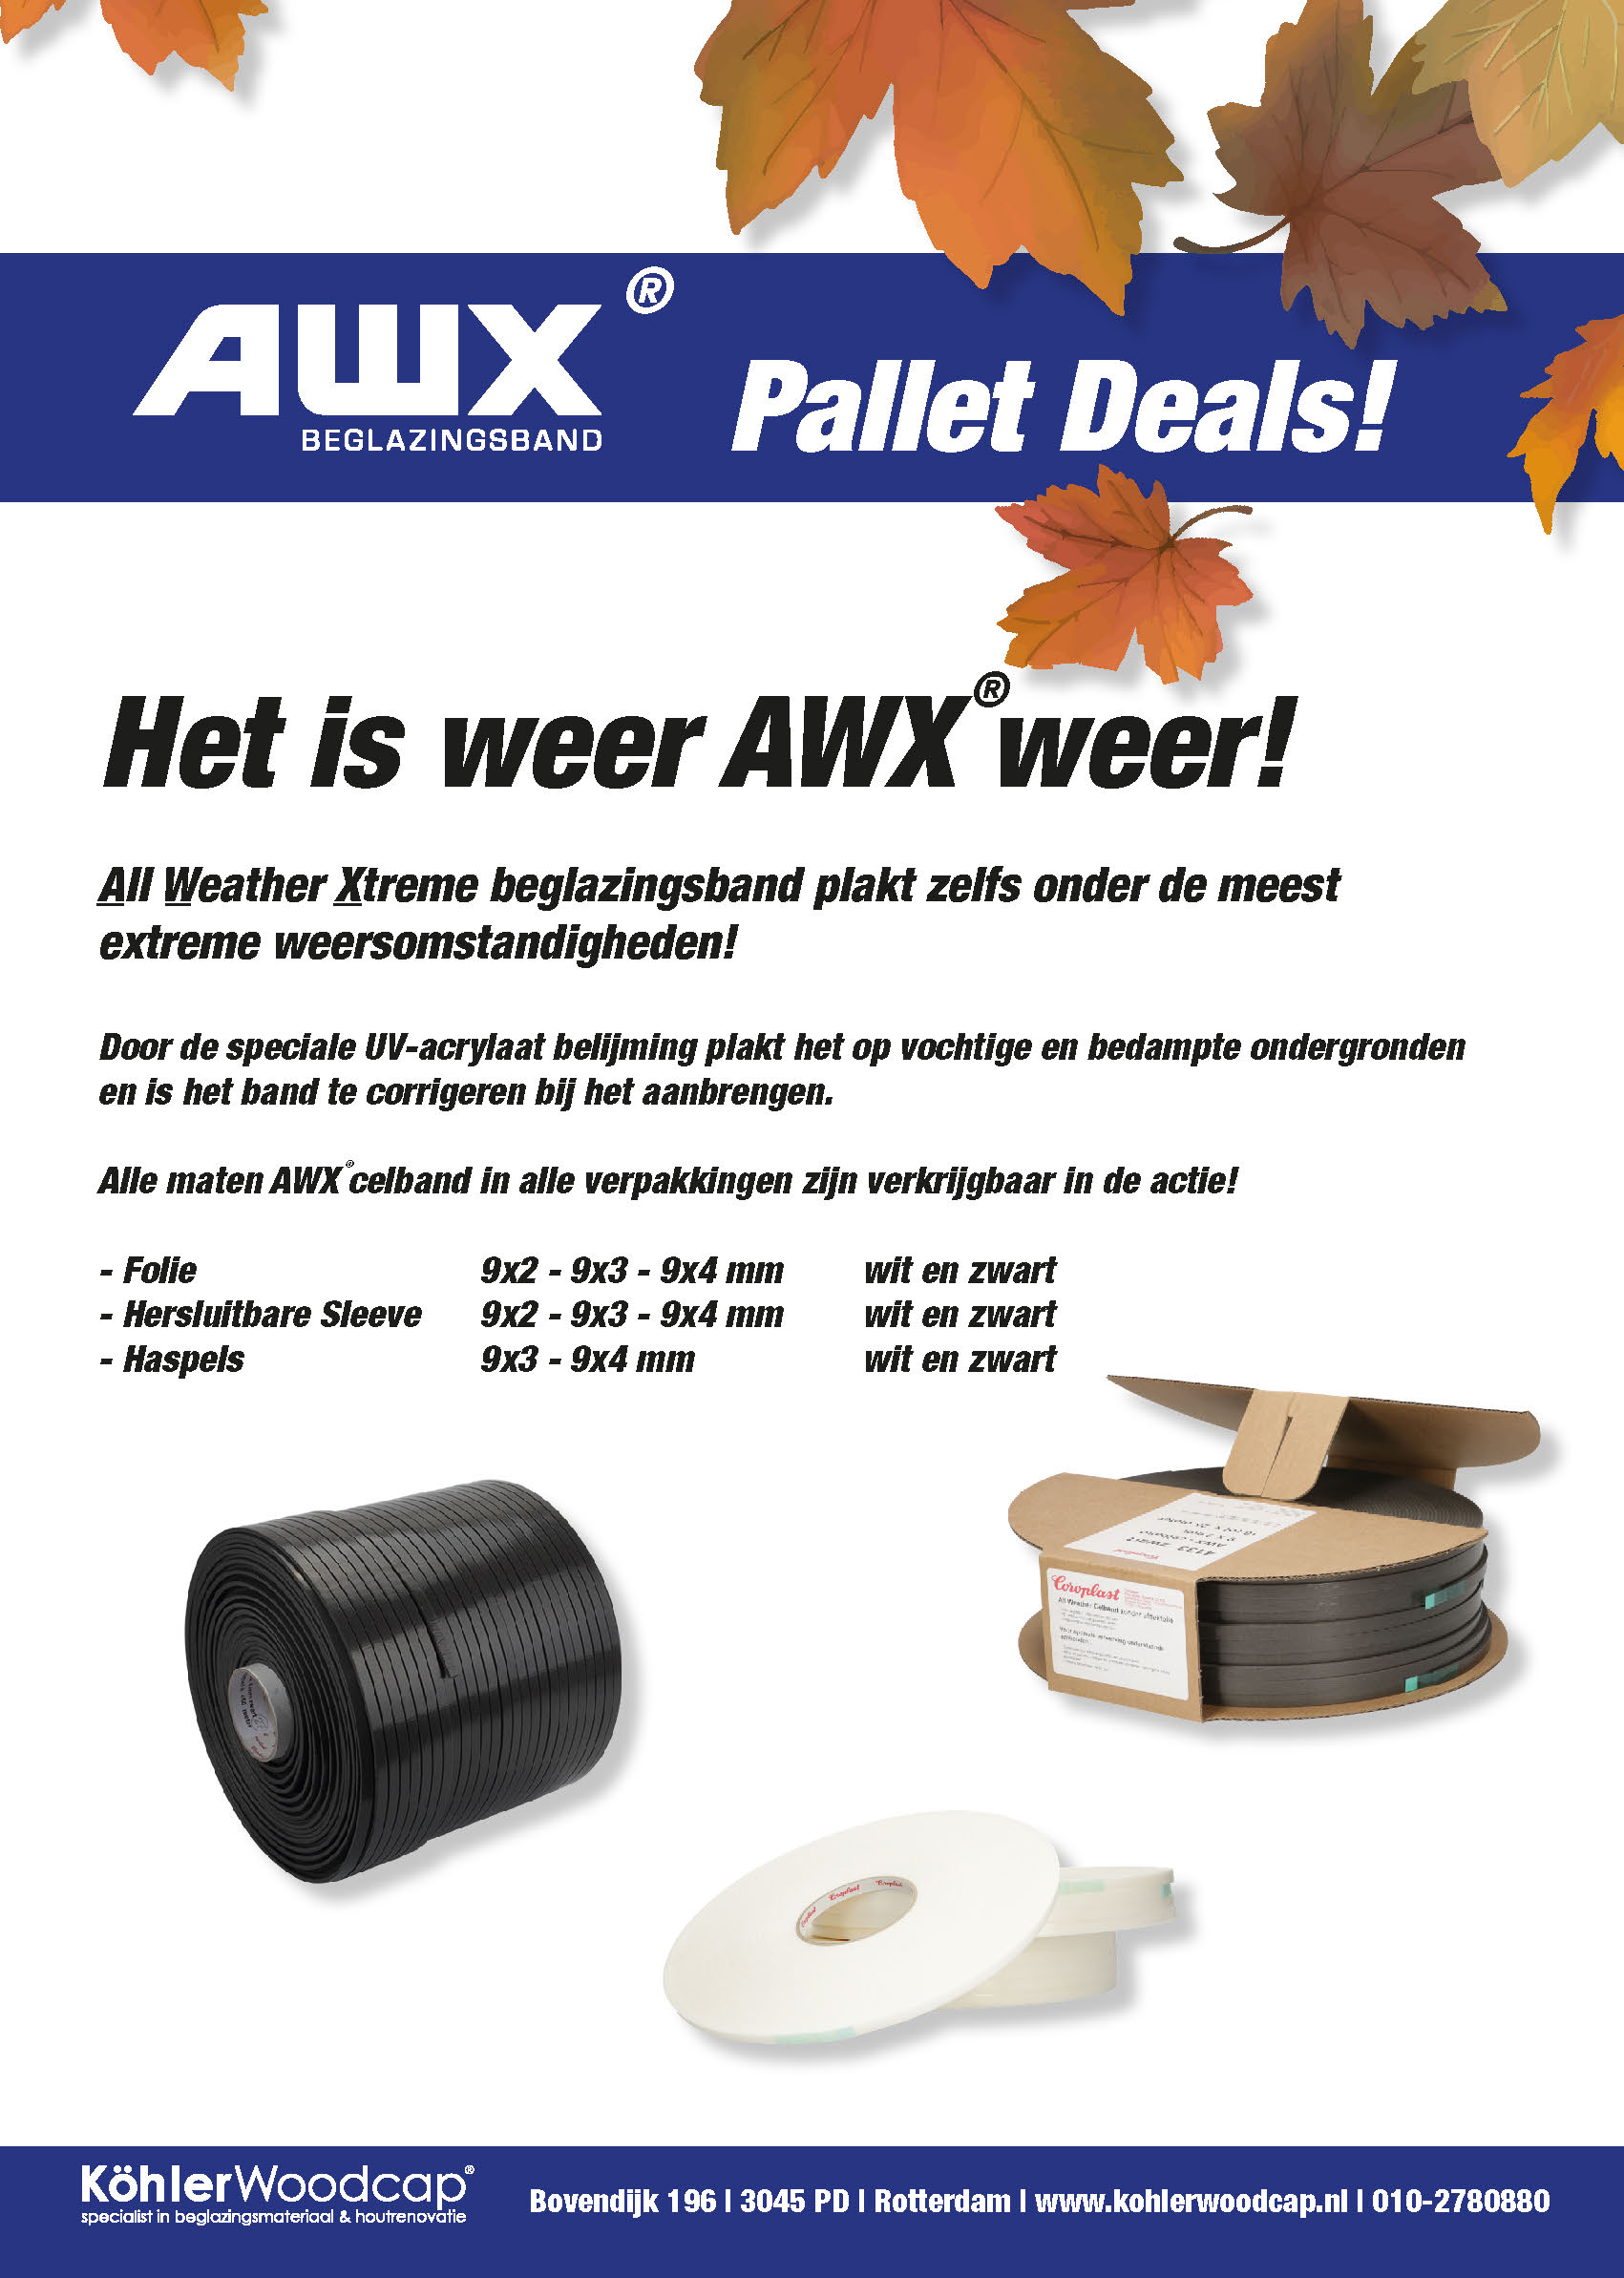 AWX pallet deals